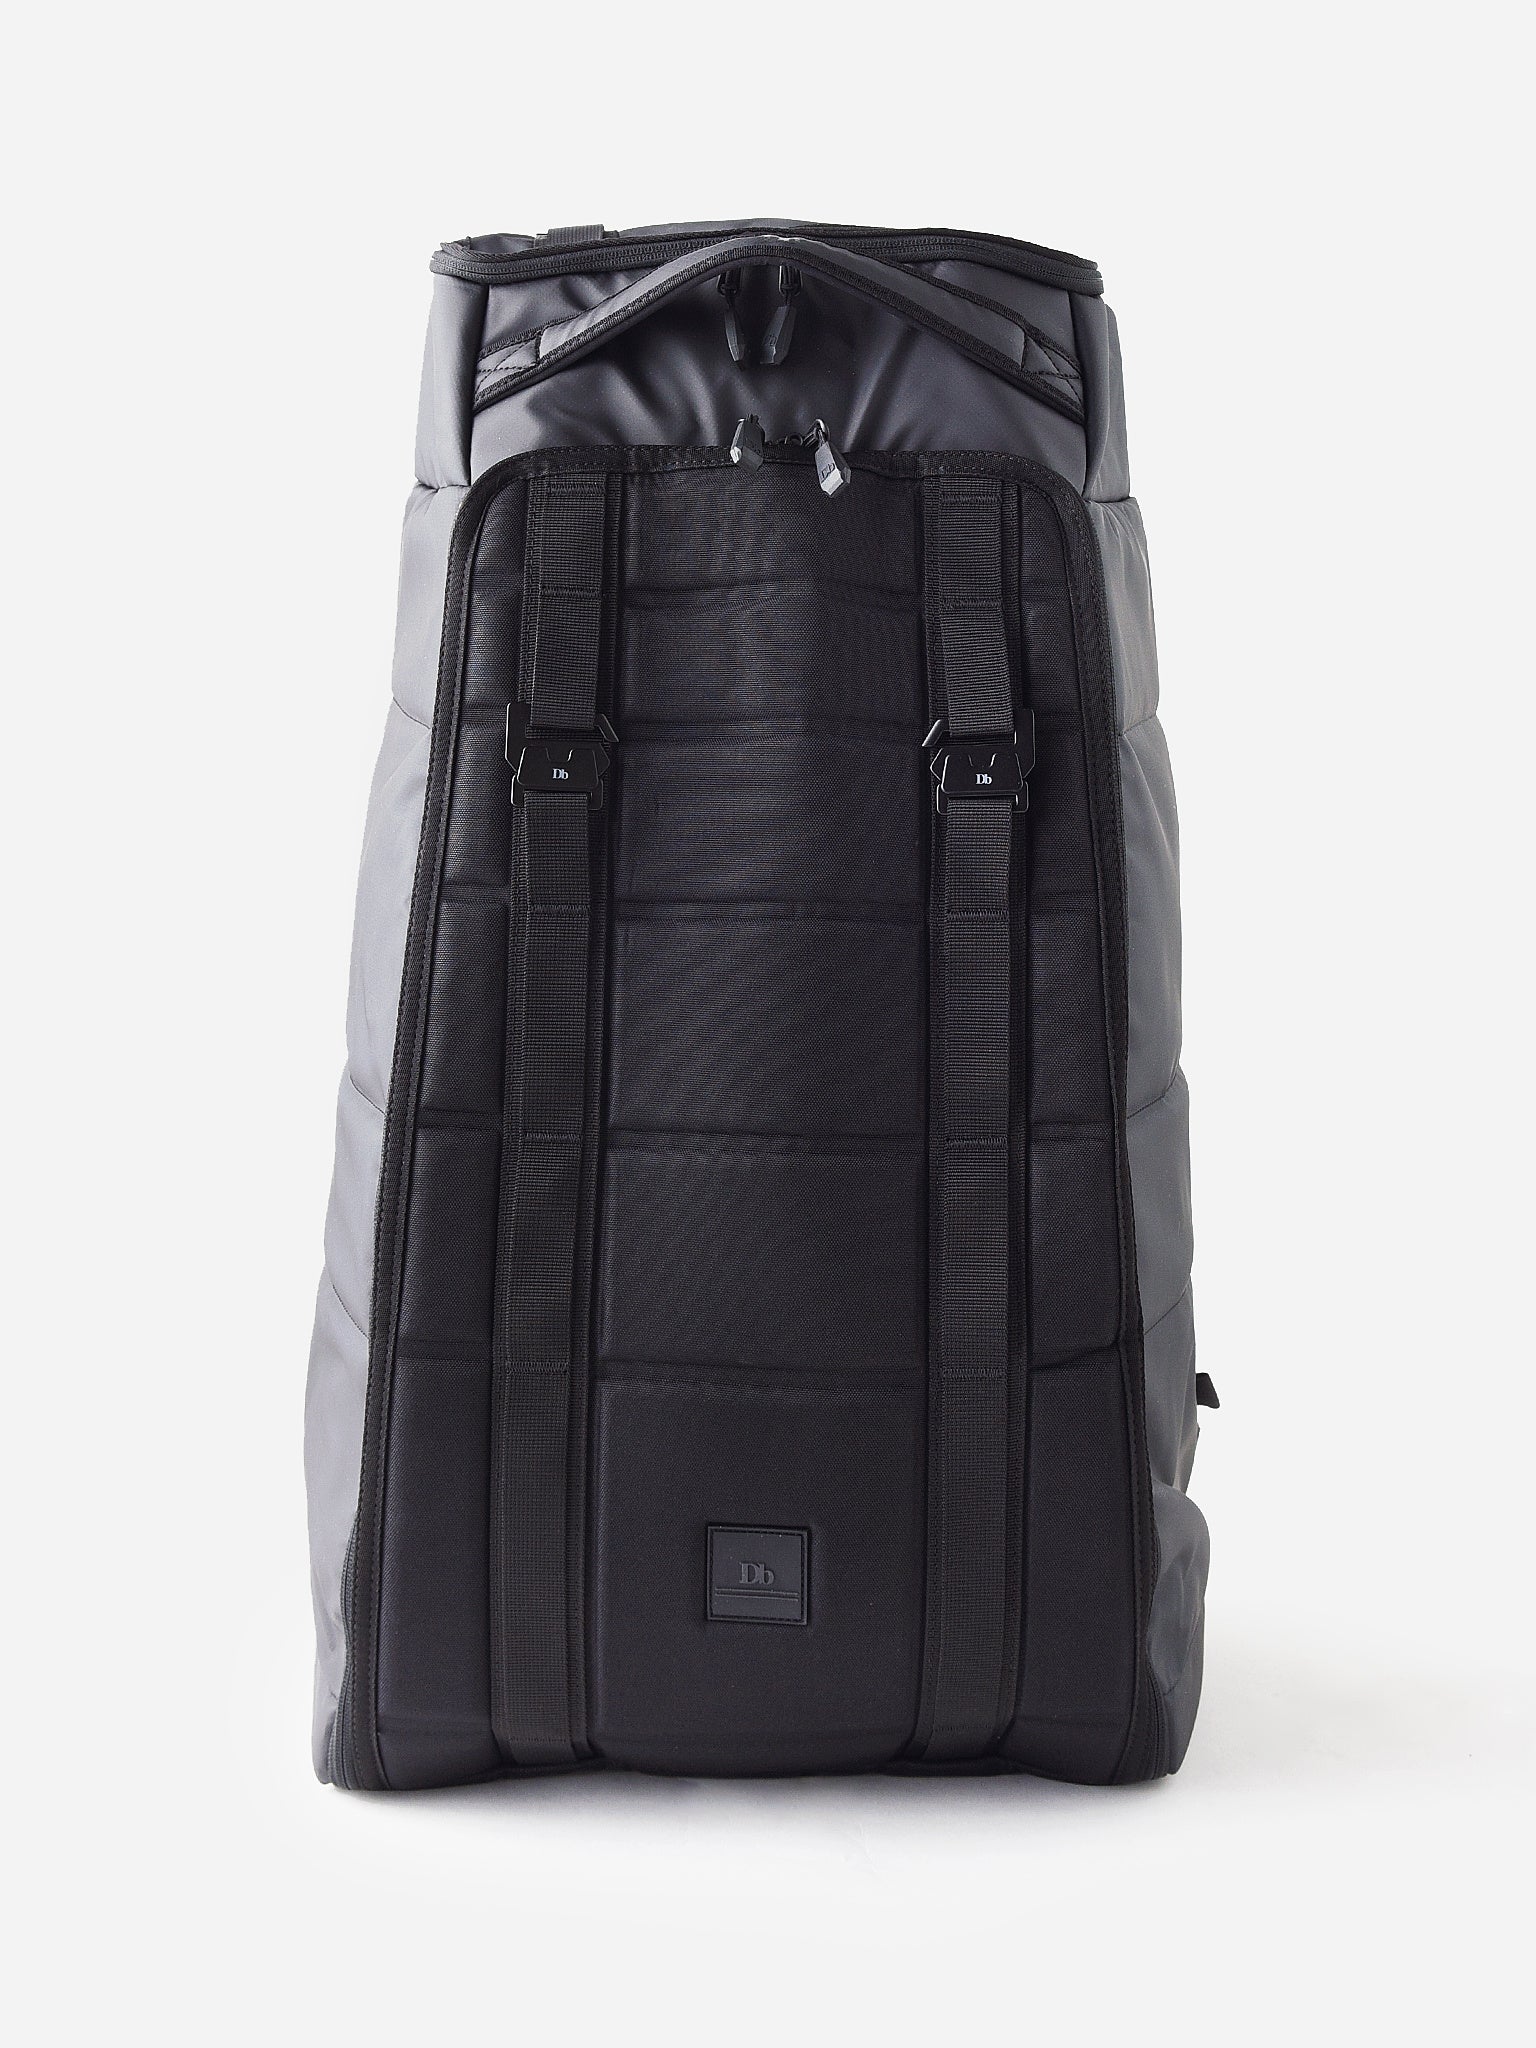 DB Journey Carryover The Hugger 50L Backpack – saintbernard.com